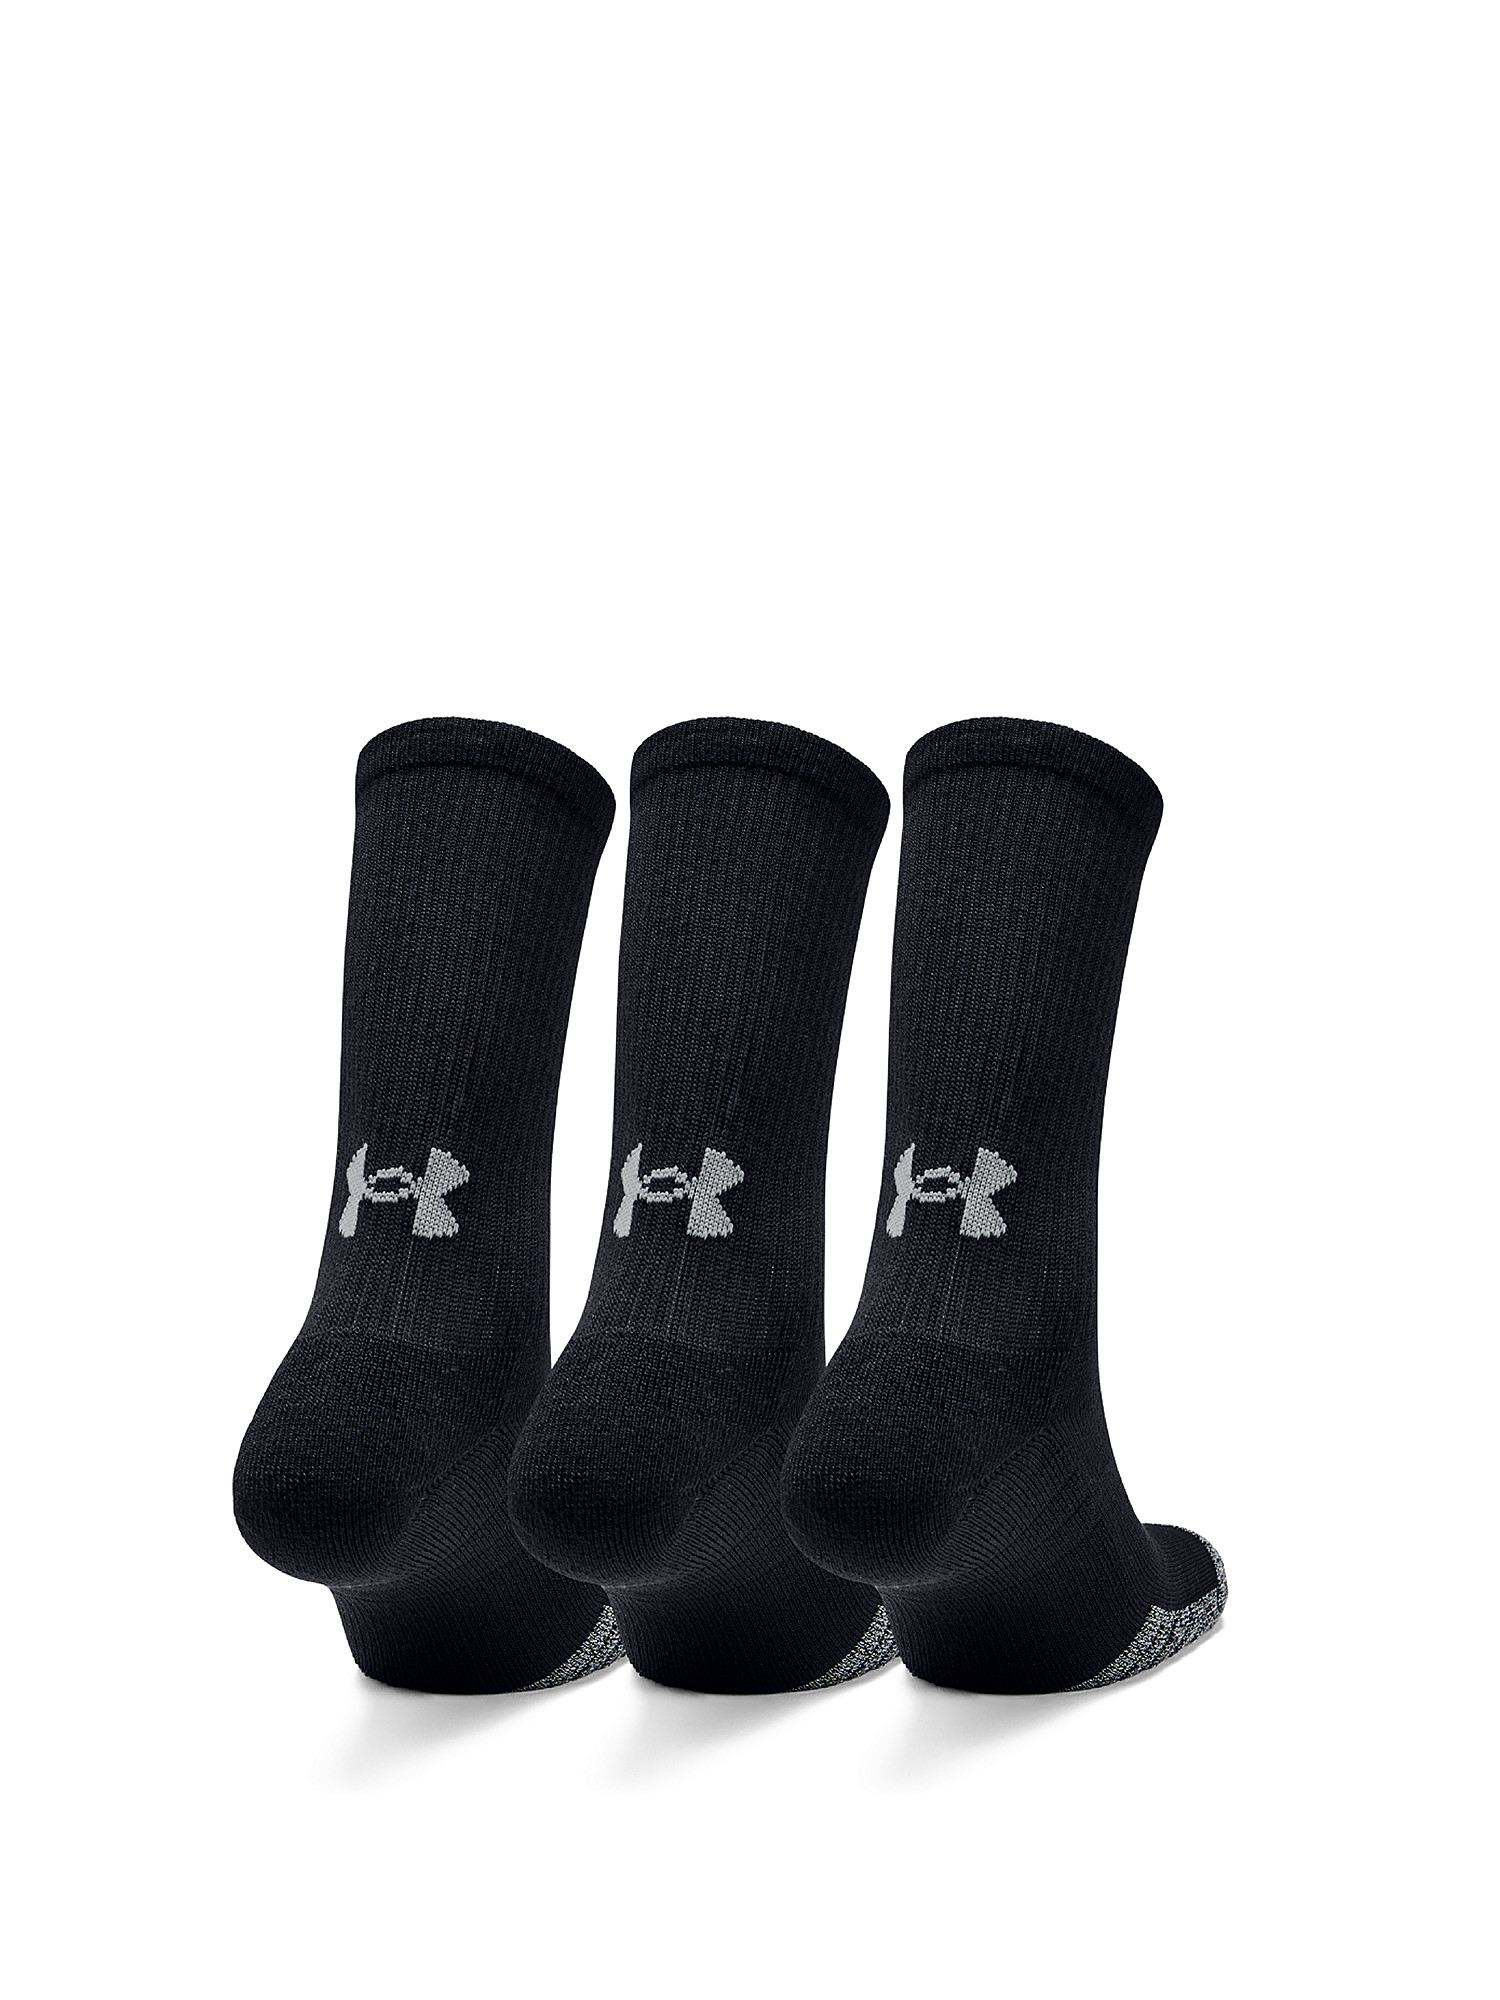 Under Armour - HeatGear® Crew socks, Black, large image number 4